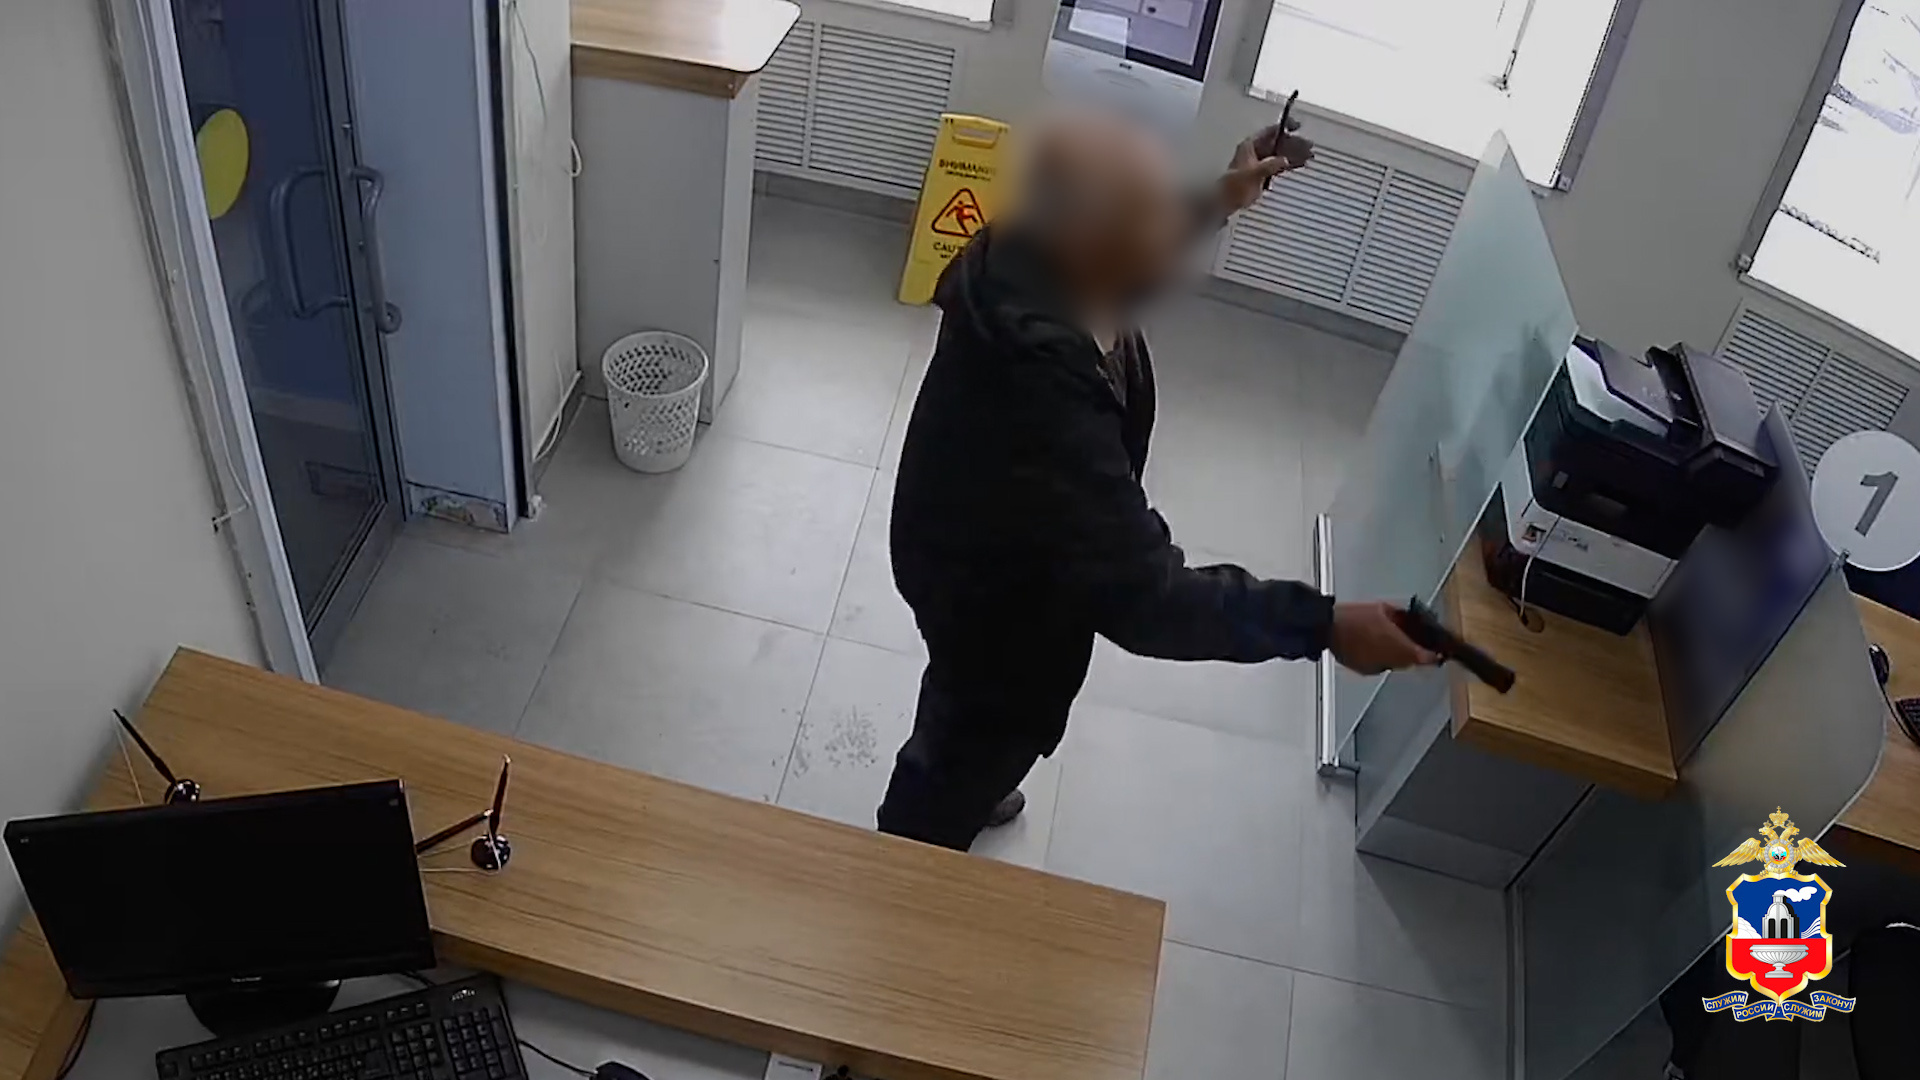 Послушал мошенников: в Рубцовске пенсионер требовал деньги и угрожал пистолетом сотрудникам банка — видео